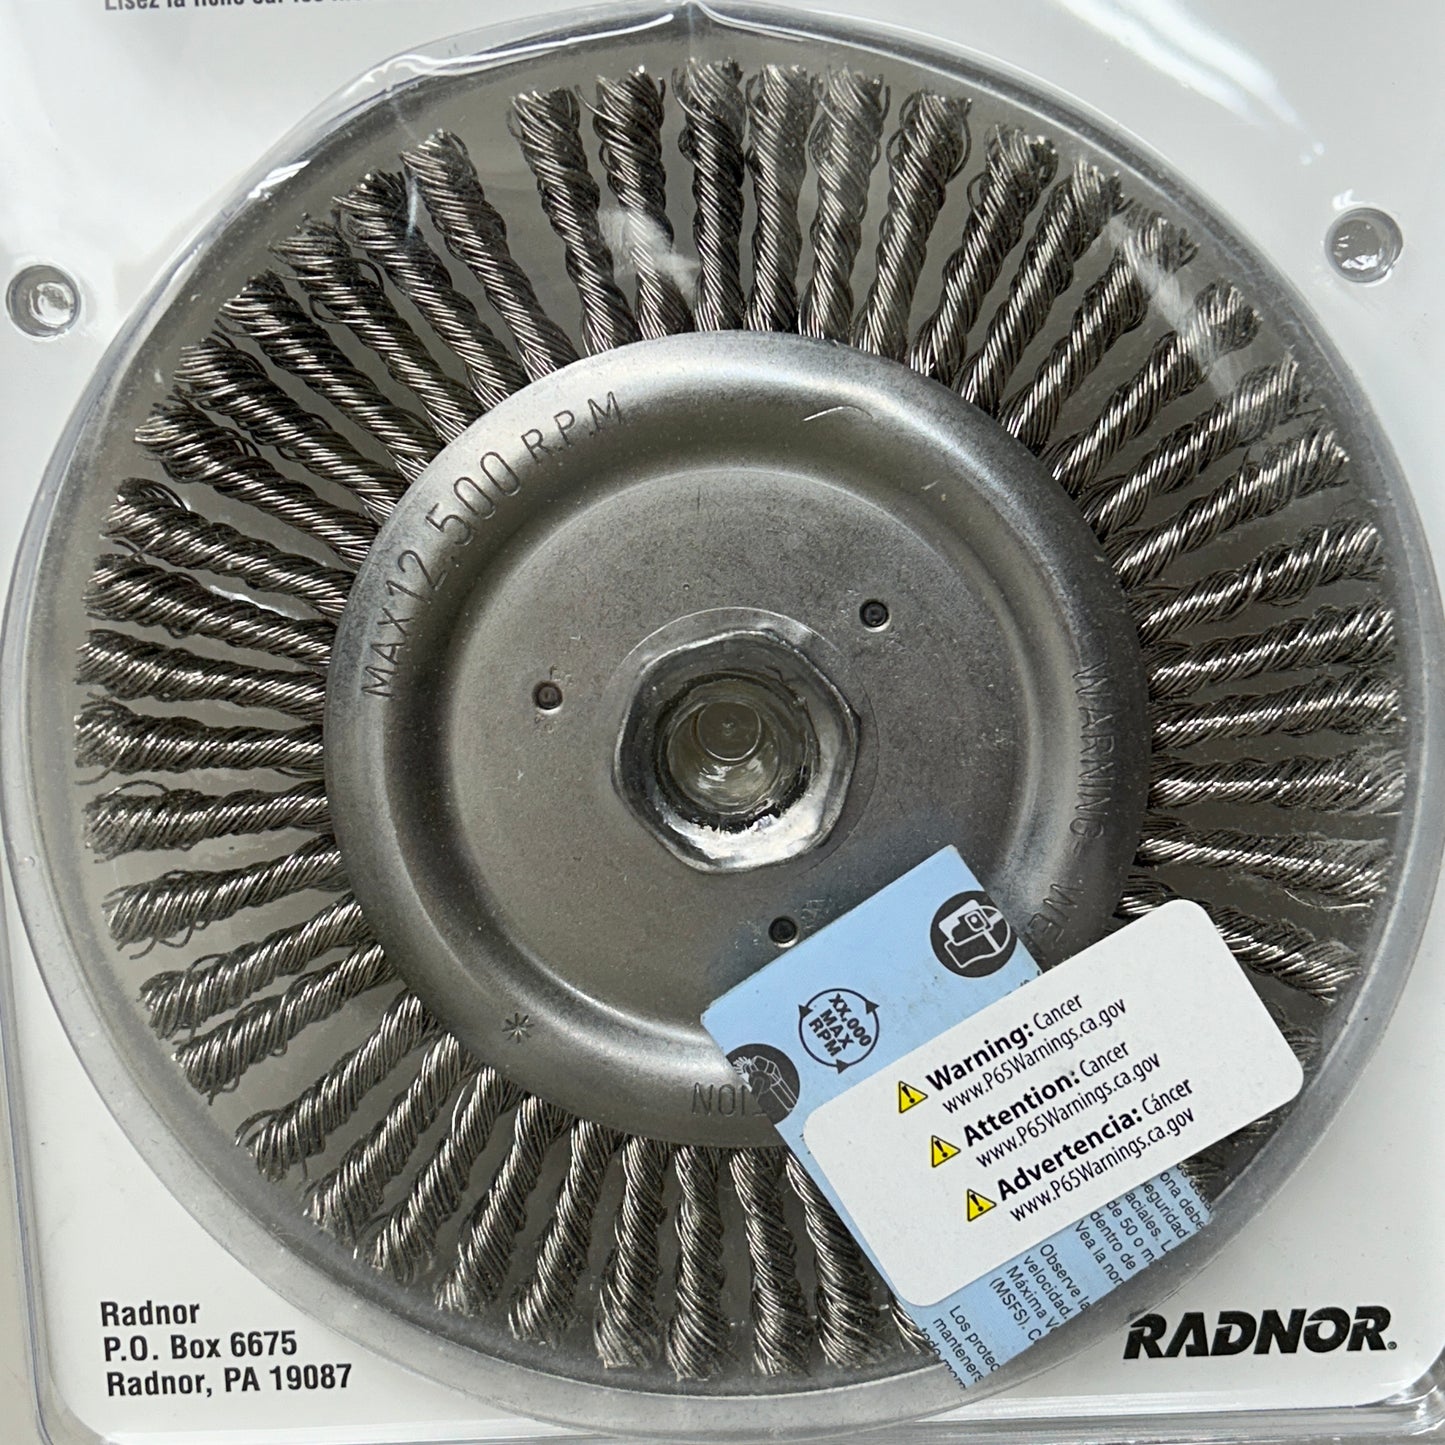 RADNOR Knot Wire Wheel 6" Stringer Bead Twist 64000336 (New)